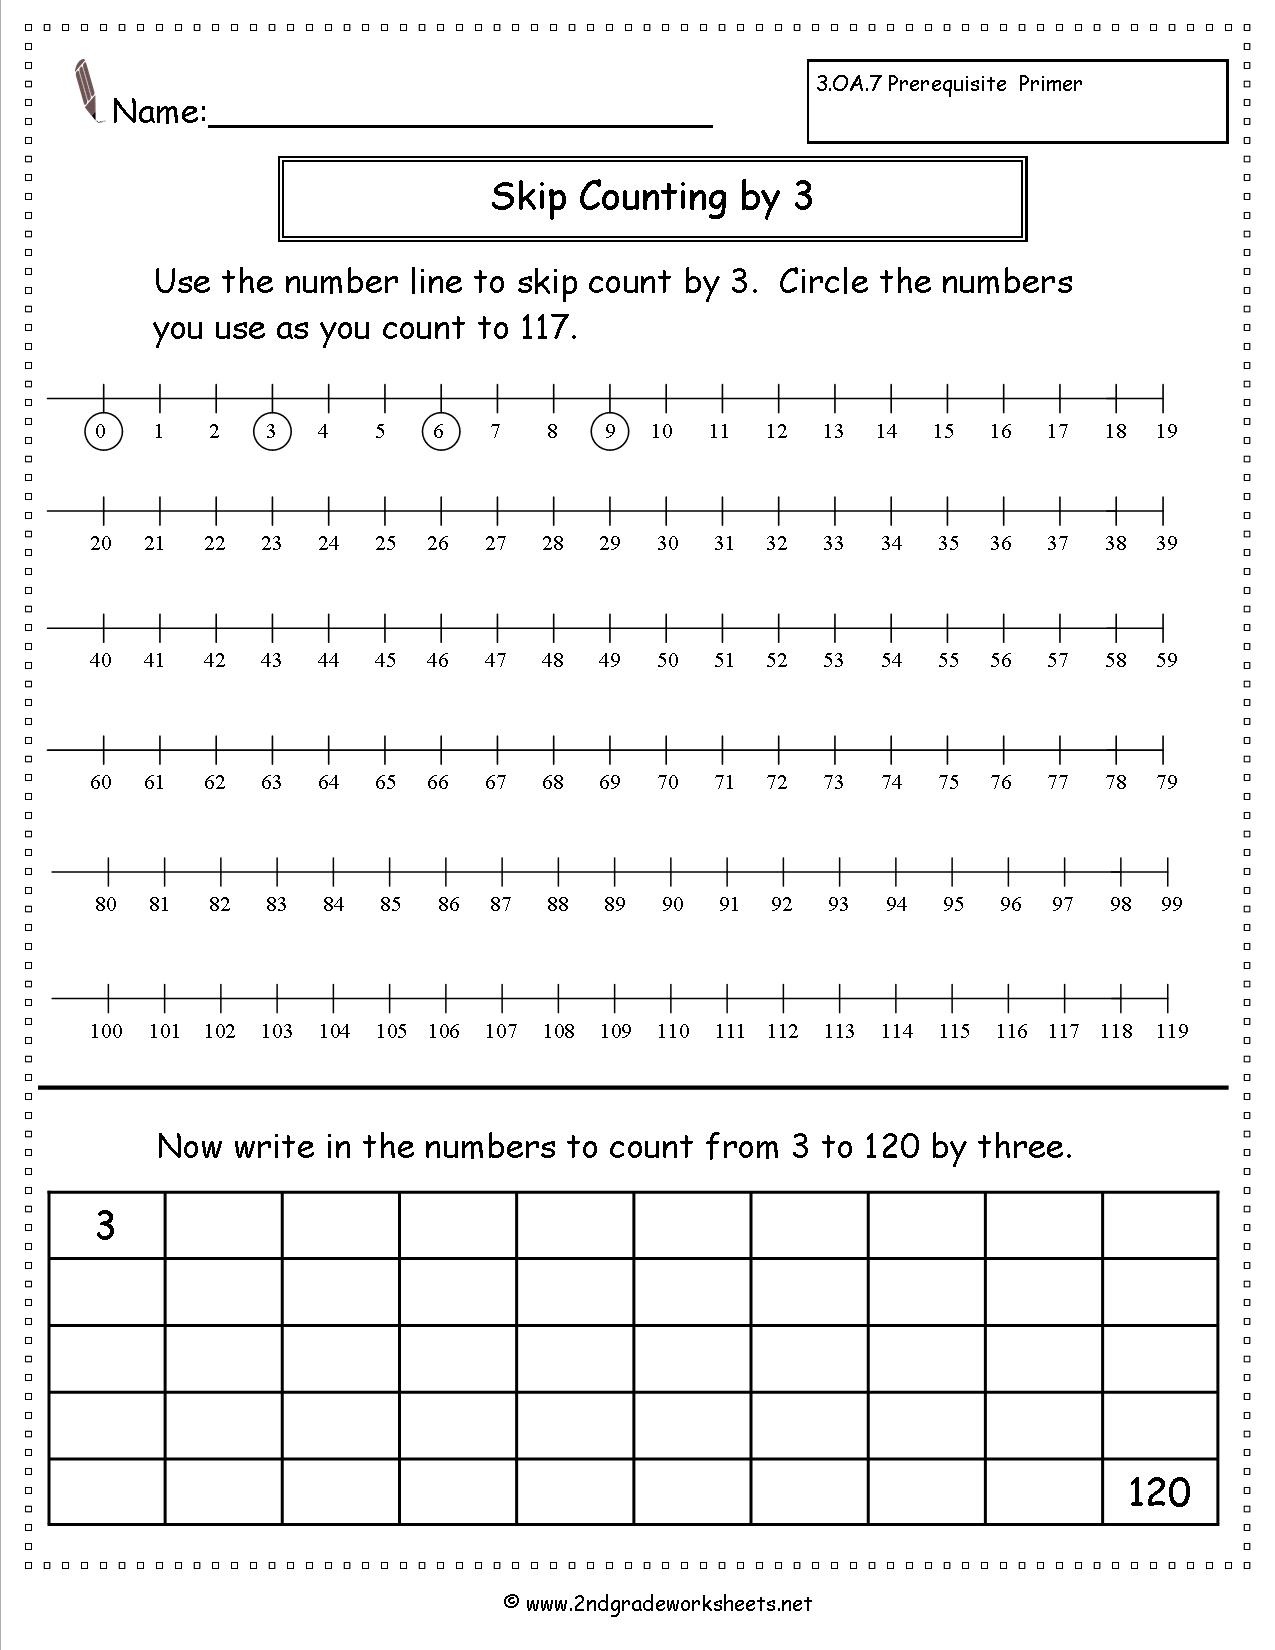 Free Skip Counting Worksheets - Free Printable Number Line Worksheets